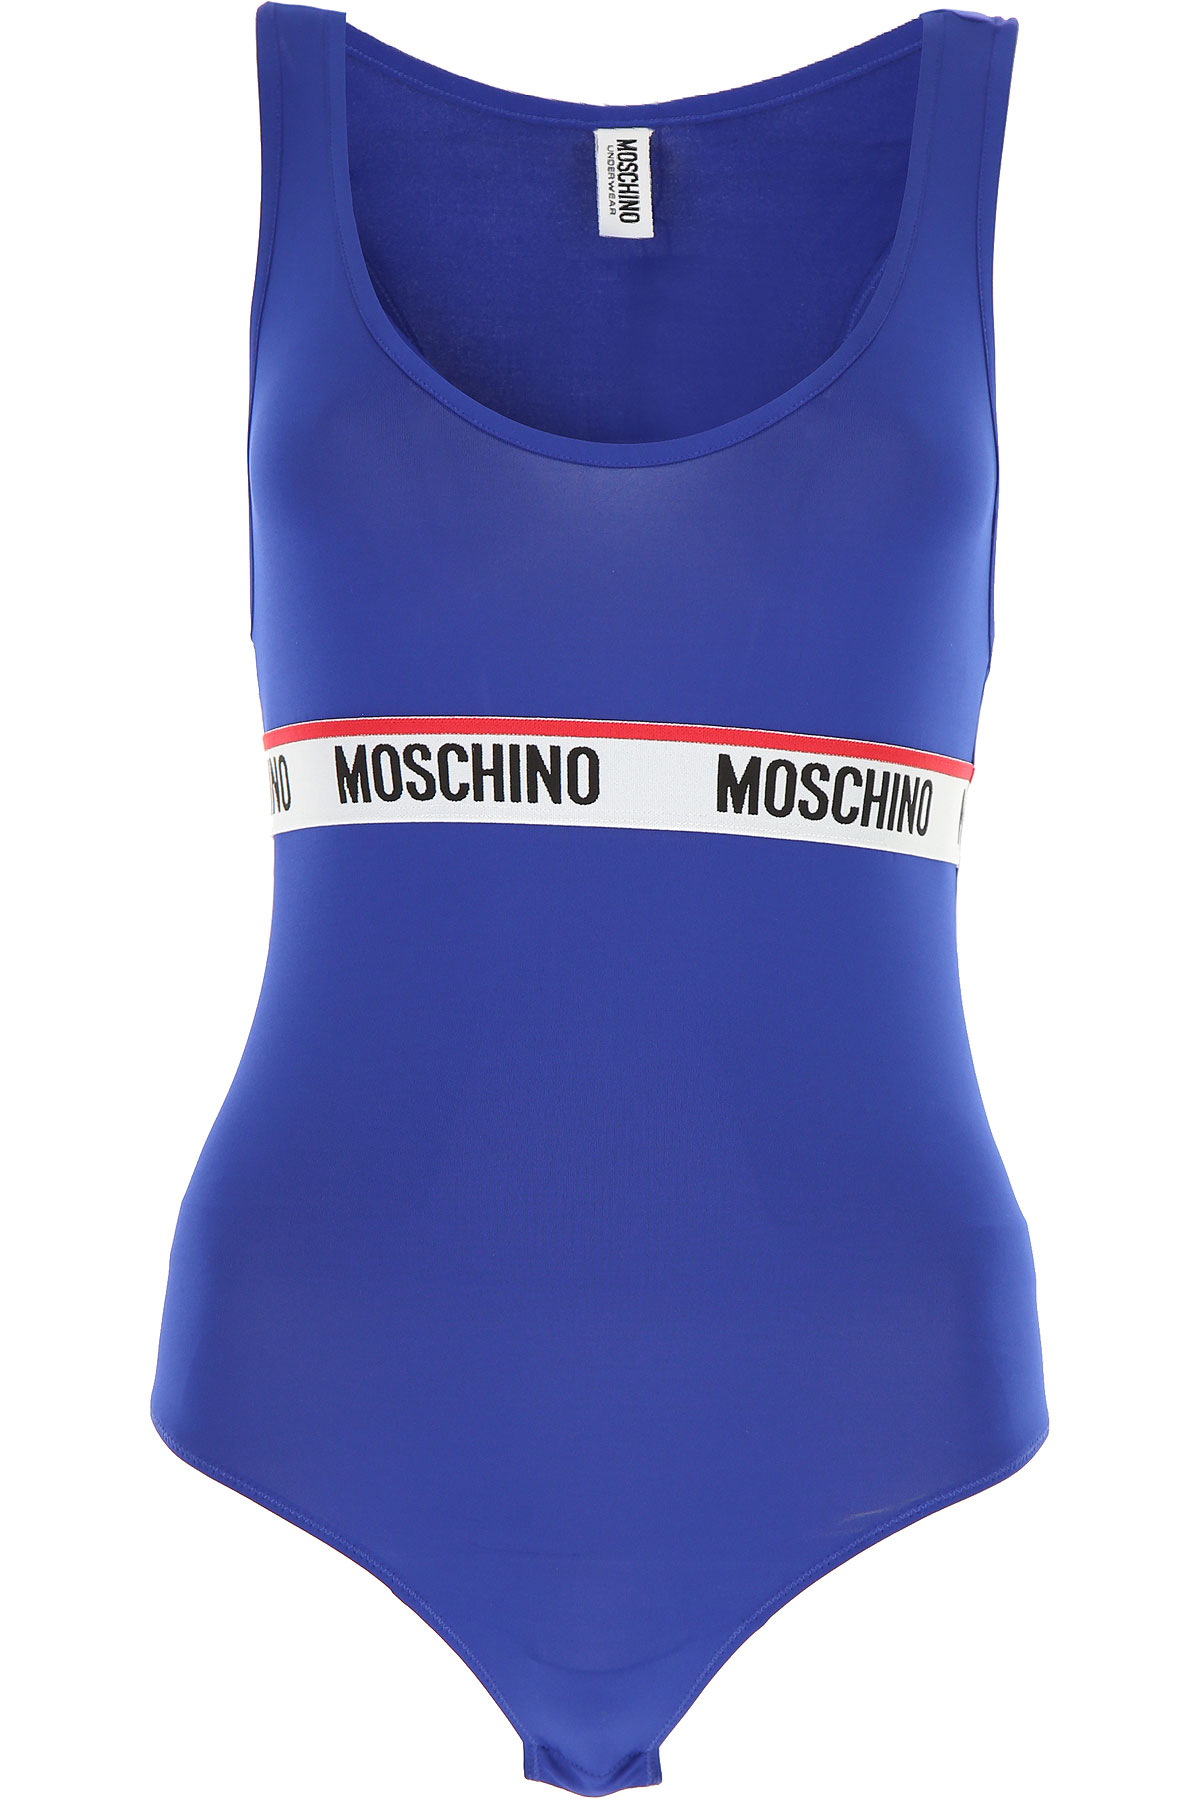 Moschino Top für Damen Günstig im Outlet Sale, Kobaltblau, Polyester, 2017, 38 M